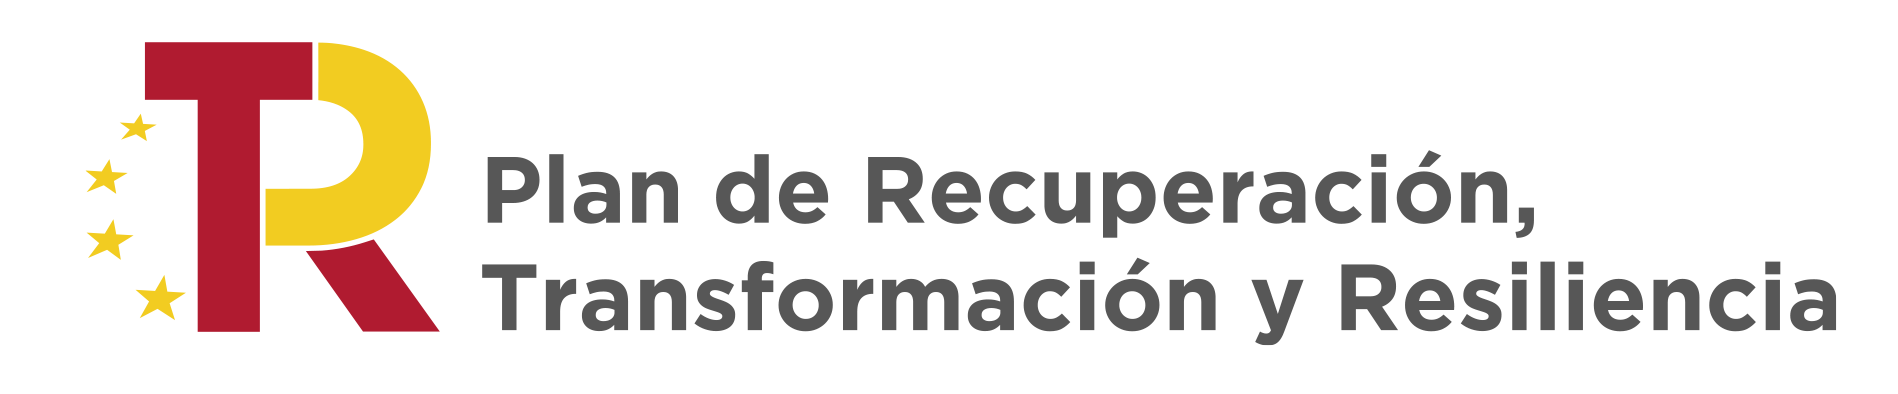 Logotipo del Plan de Recuperación, Transformación y Resiliencia español junto a la bandera de la Unión Europea, representando la inversión y el apoyo en la recuperación post-pandemia y la resiliencia económica a través de la reforma estructural y las inversiones públicas.